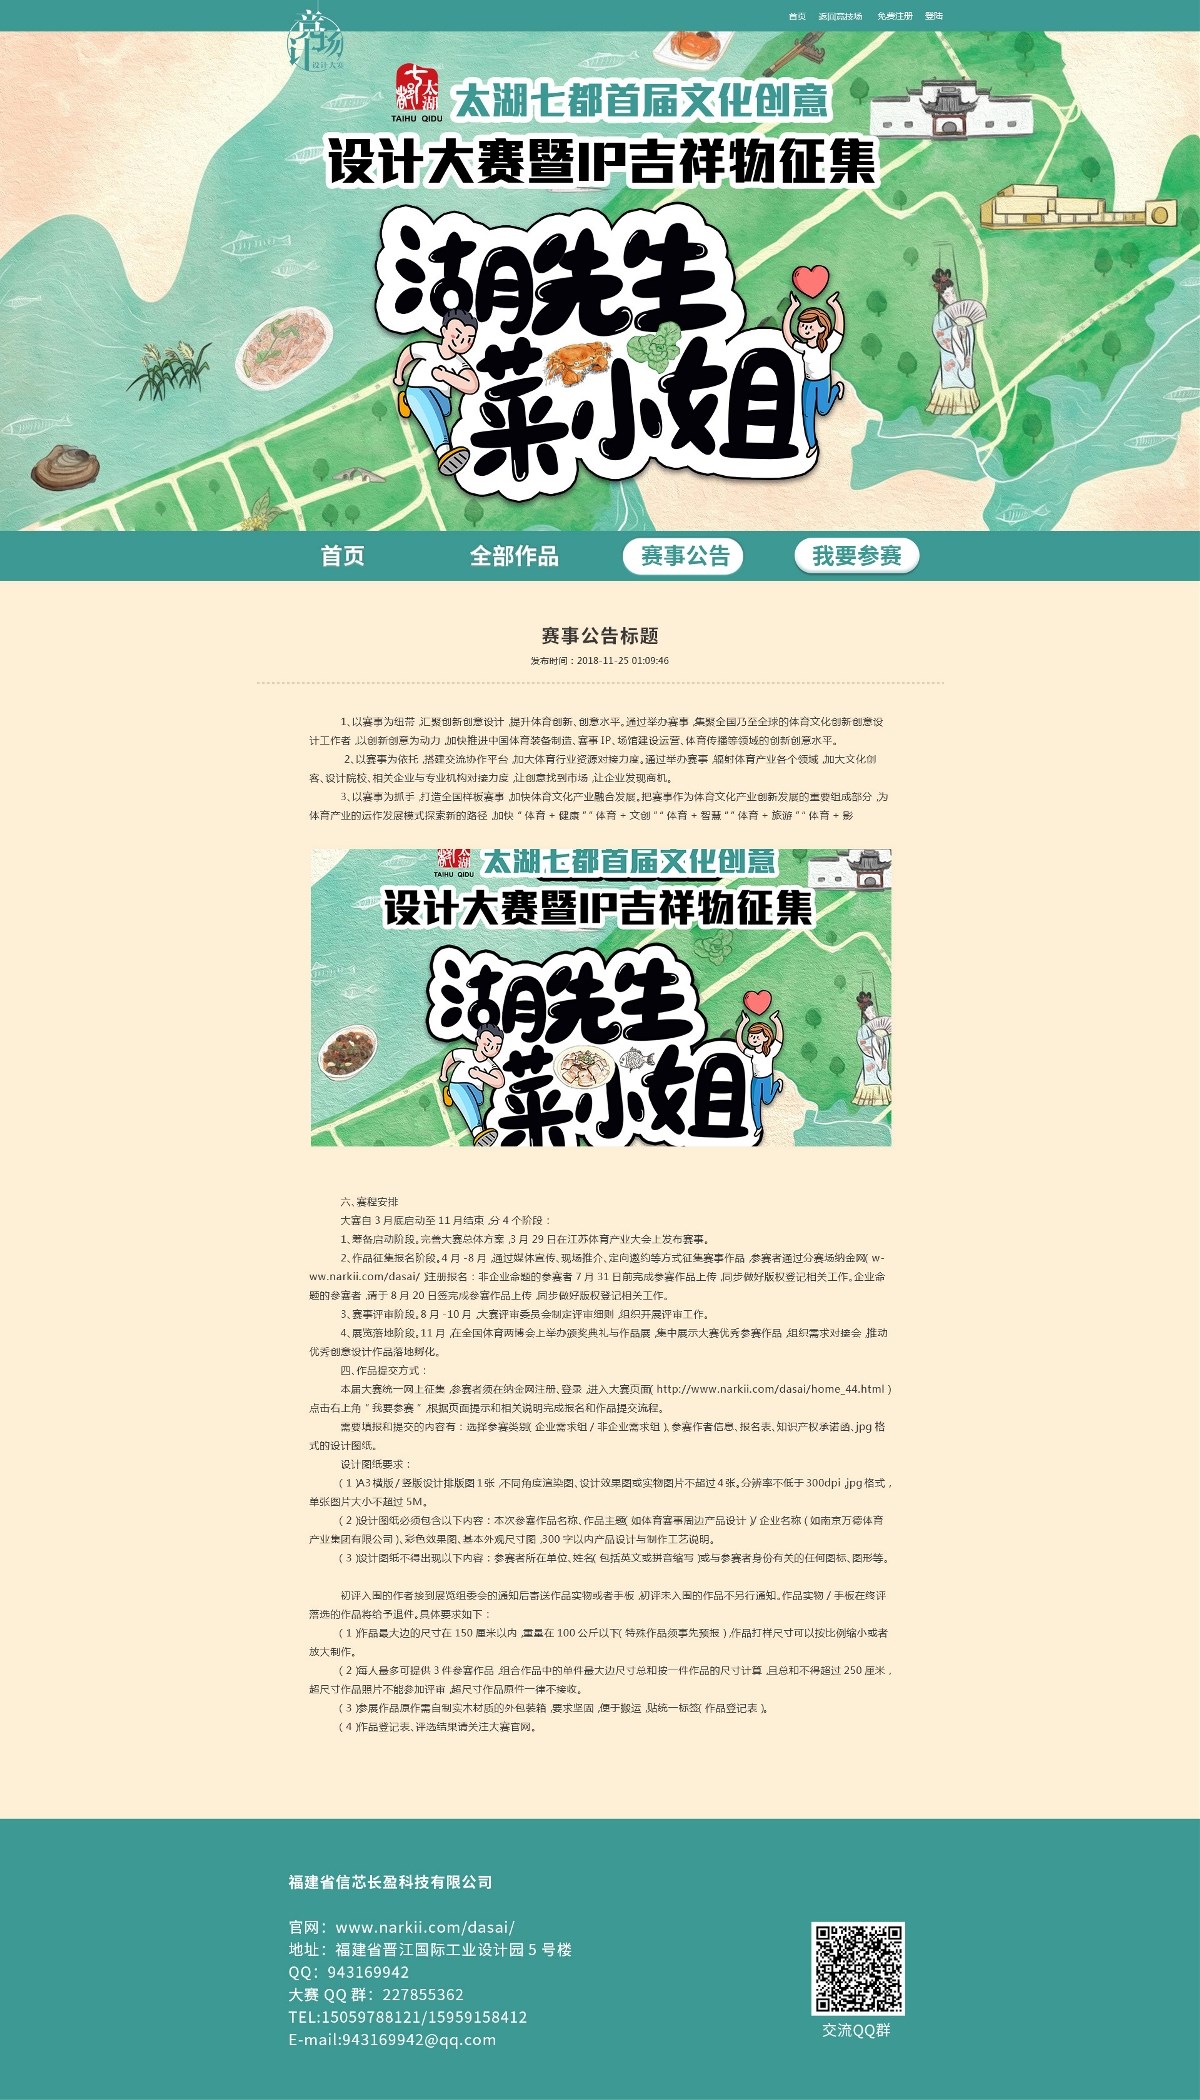 2020年太湖七都首届文化创意设计大赛暨IP吉祥物征集公告页面设计